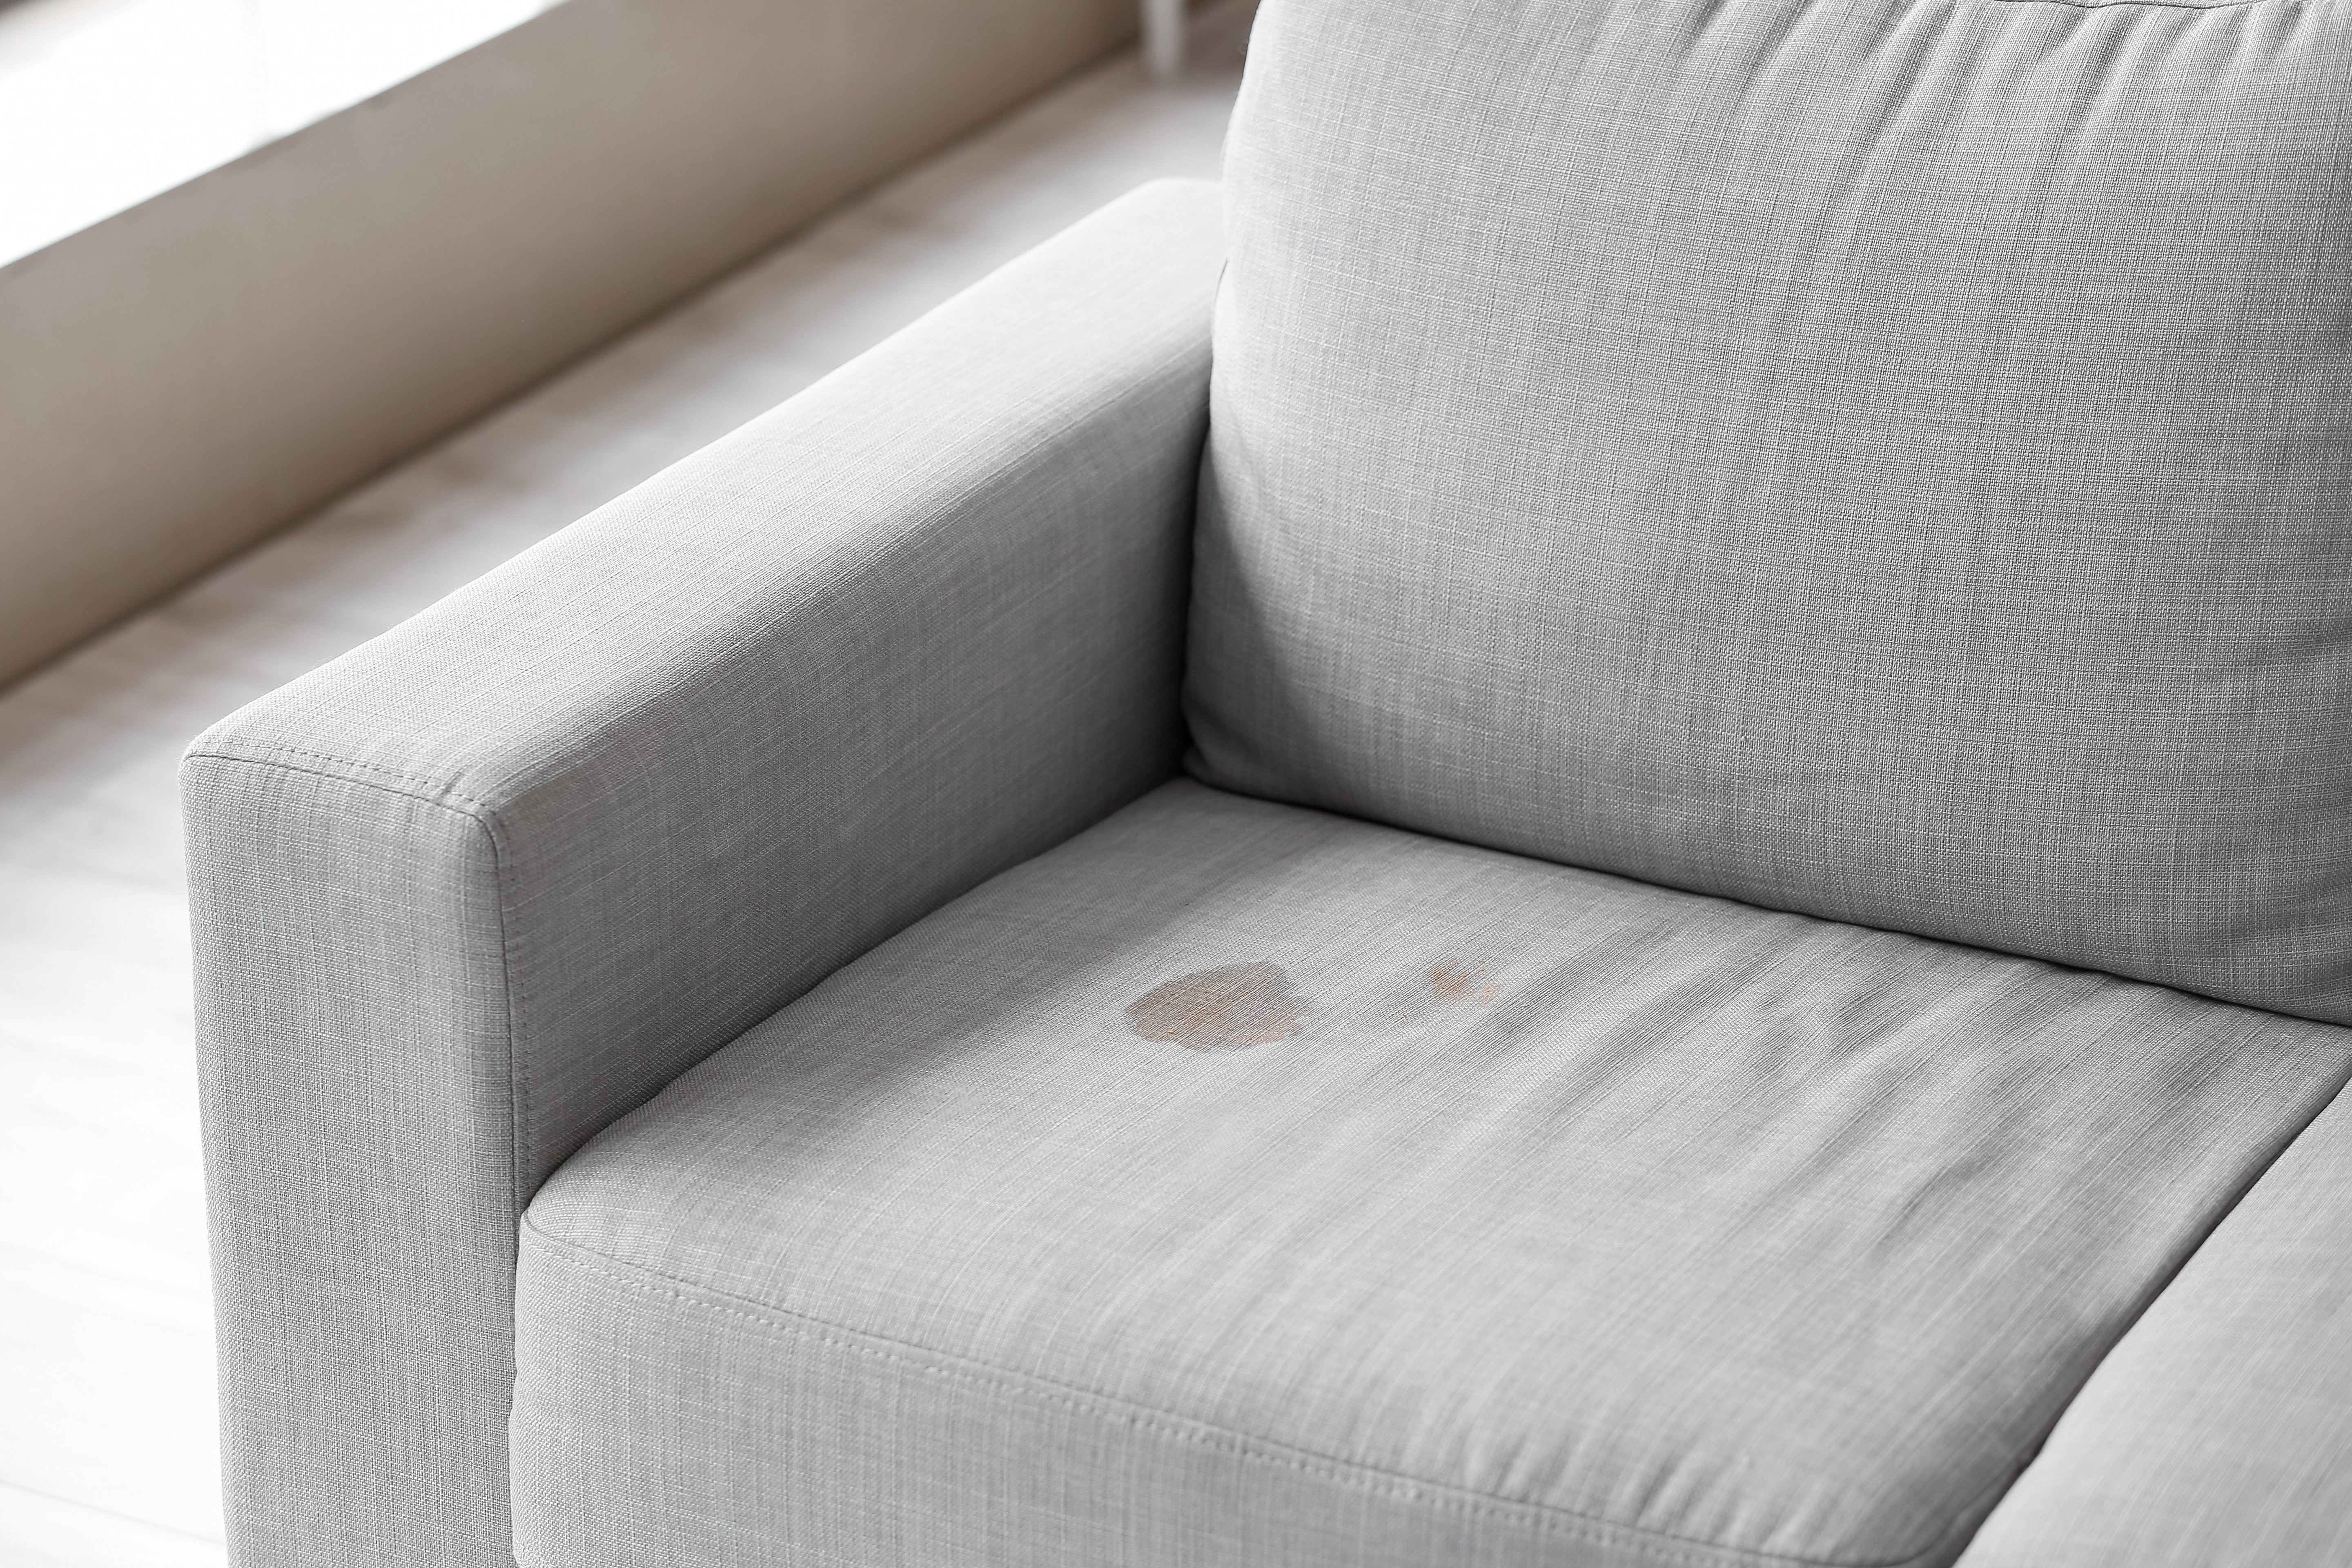 Come smacchiare il divano in tessuto: metodi per la pulizia da casa